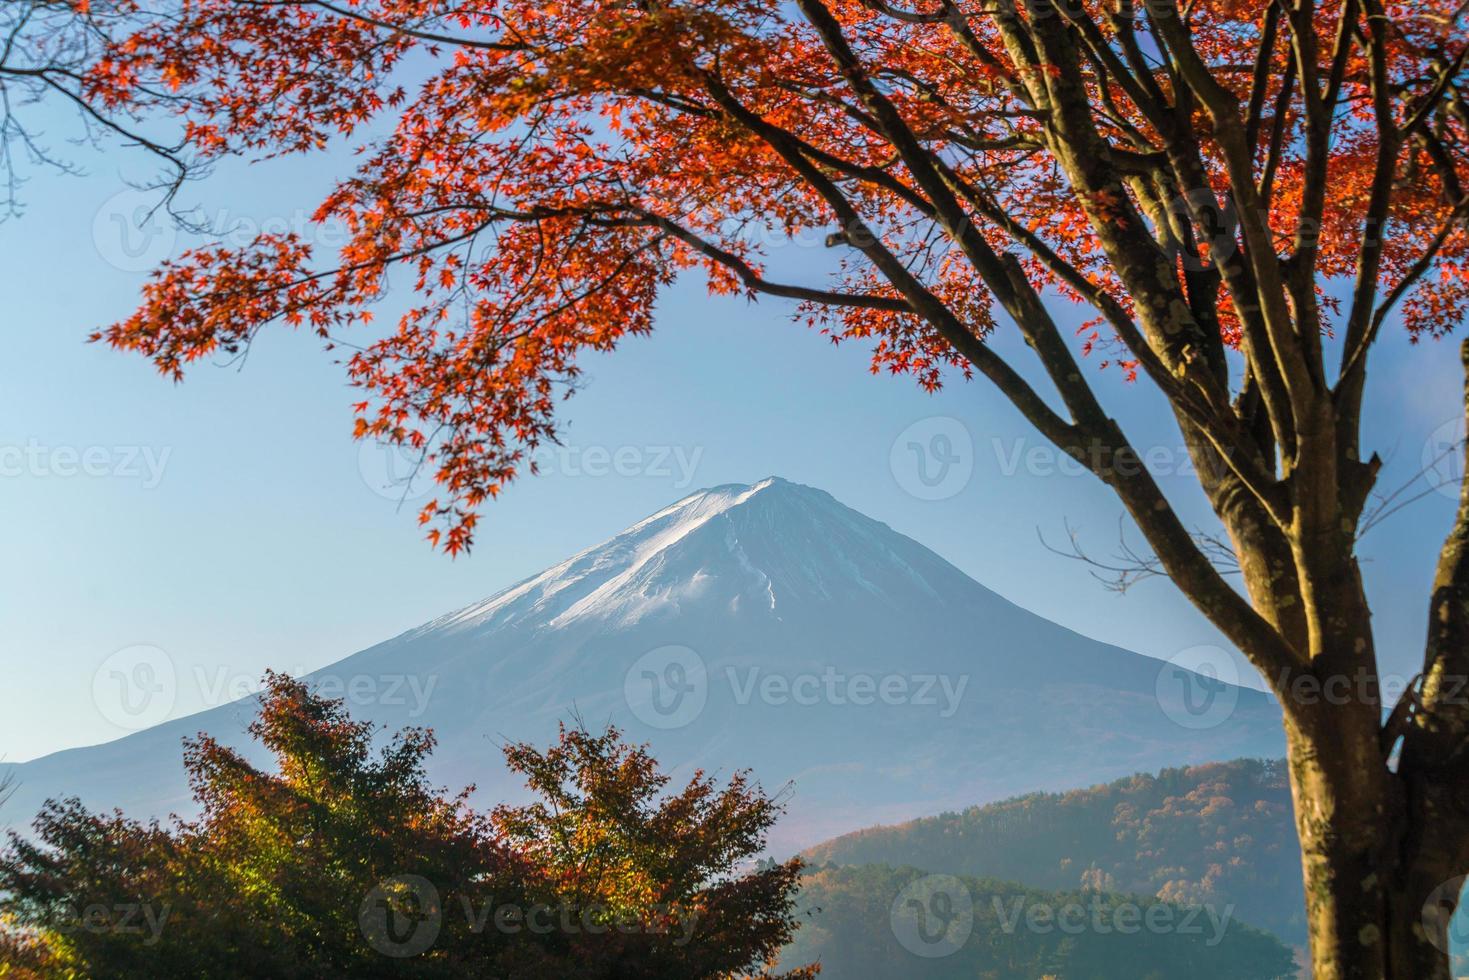 mt. fuji in autunno con foglie d'acero rosse foto